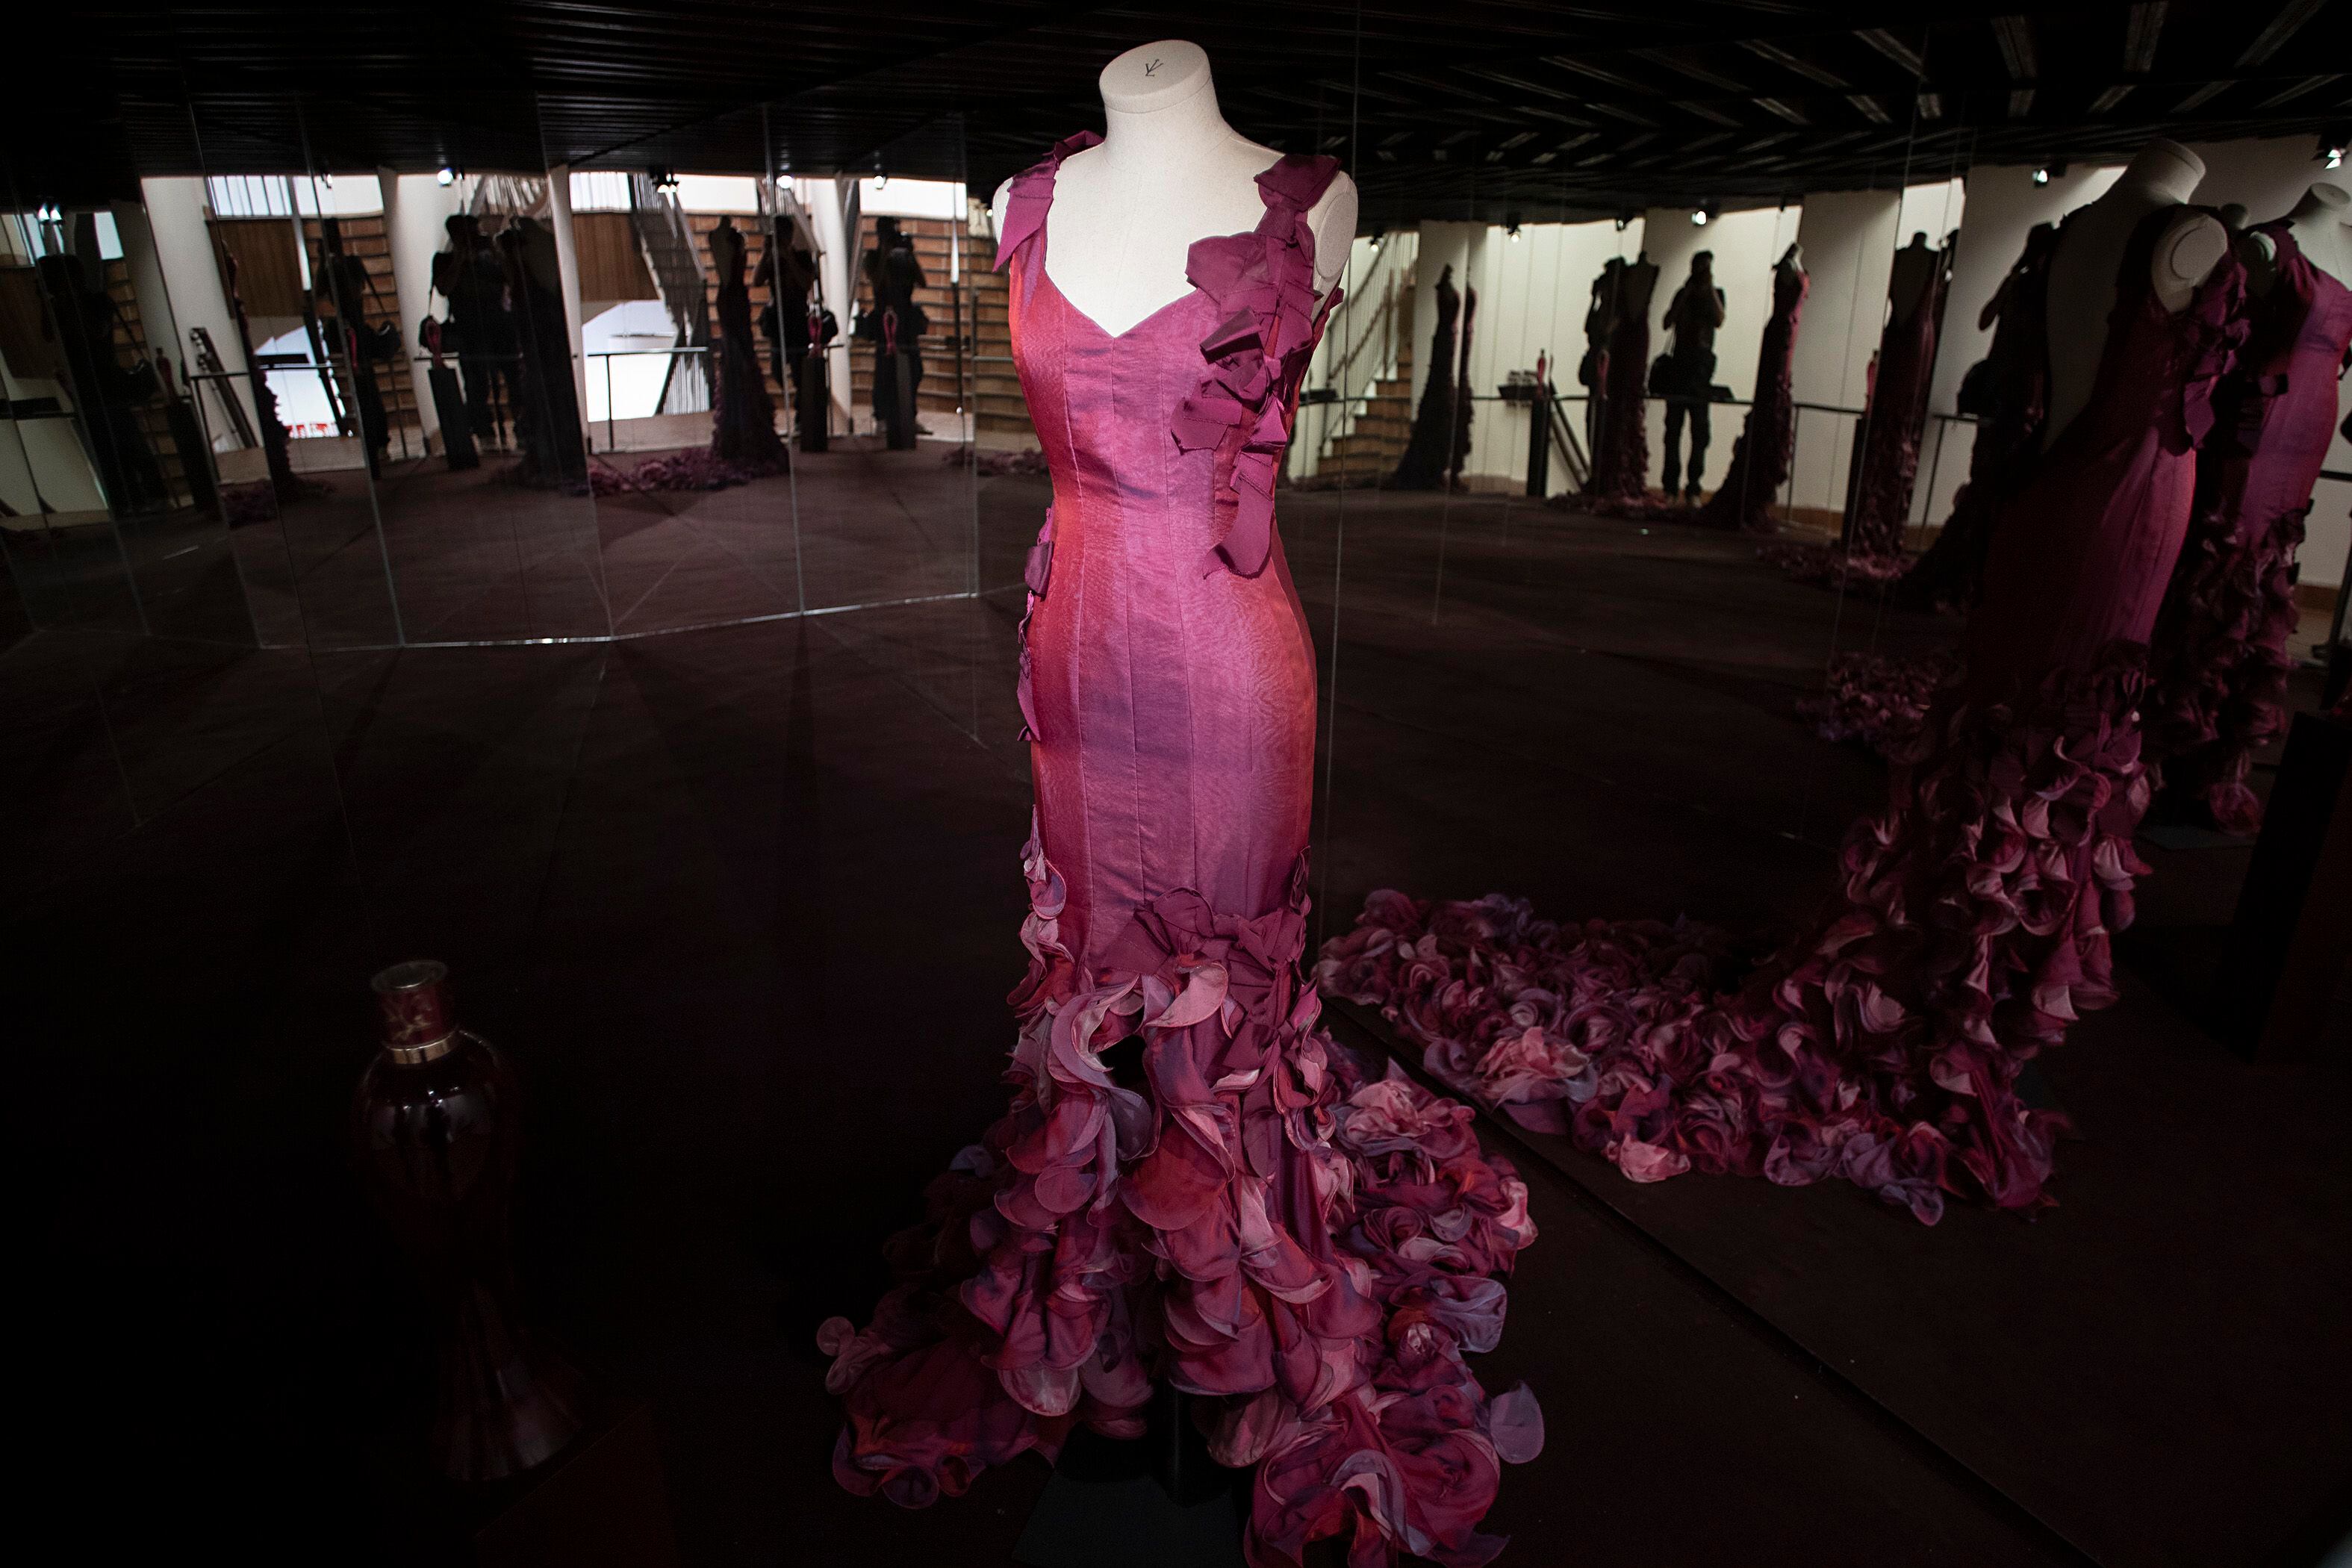 El museo de Victorio & Lucchino tendrá 60 piezas en la exposición, en un recorrido de su trayectoria creativa, con vestidos y complementos que se extienden en siete salas sobre un proyecto museográfico que persigue lograr un 